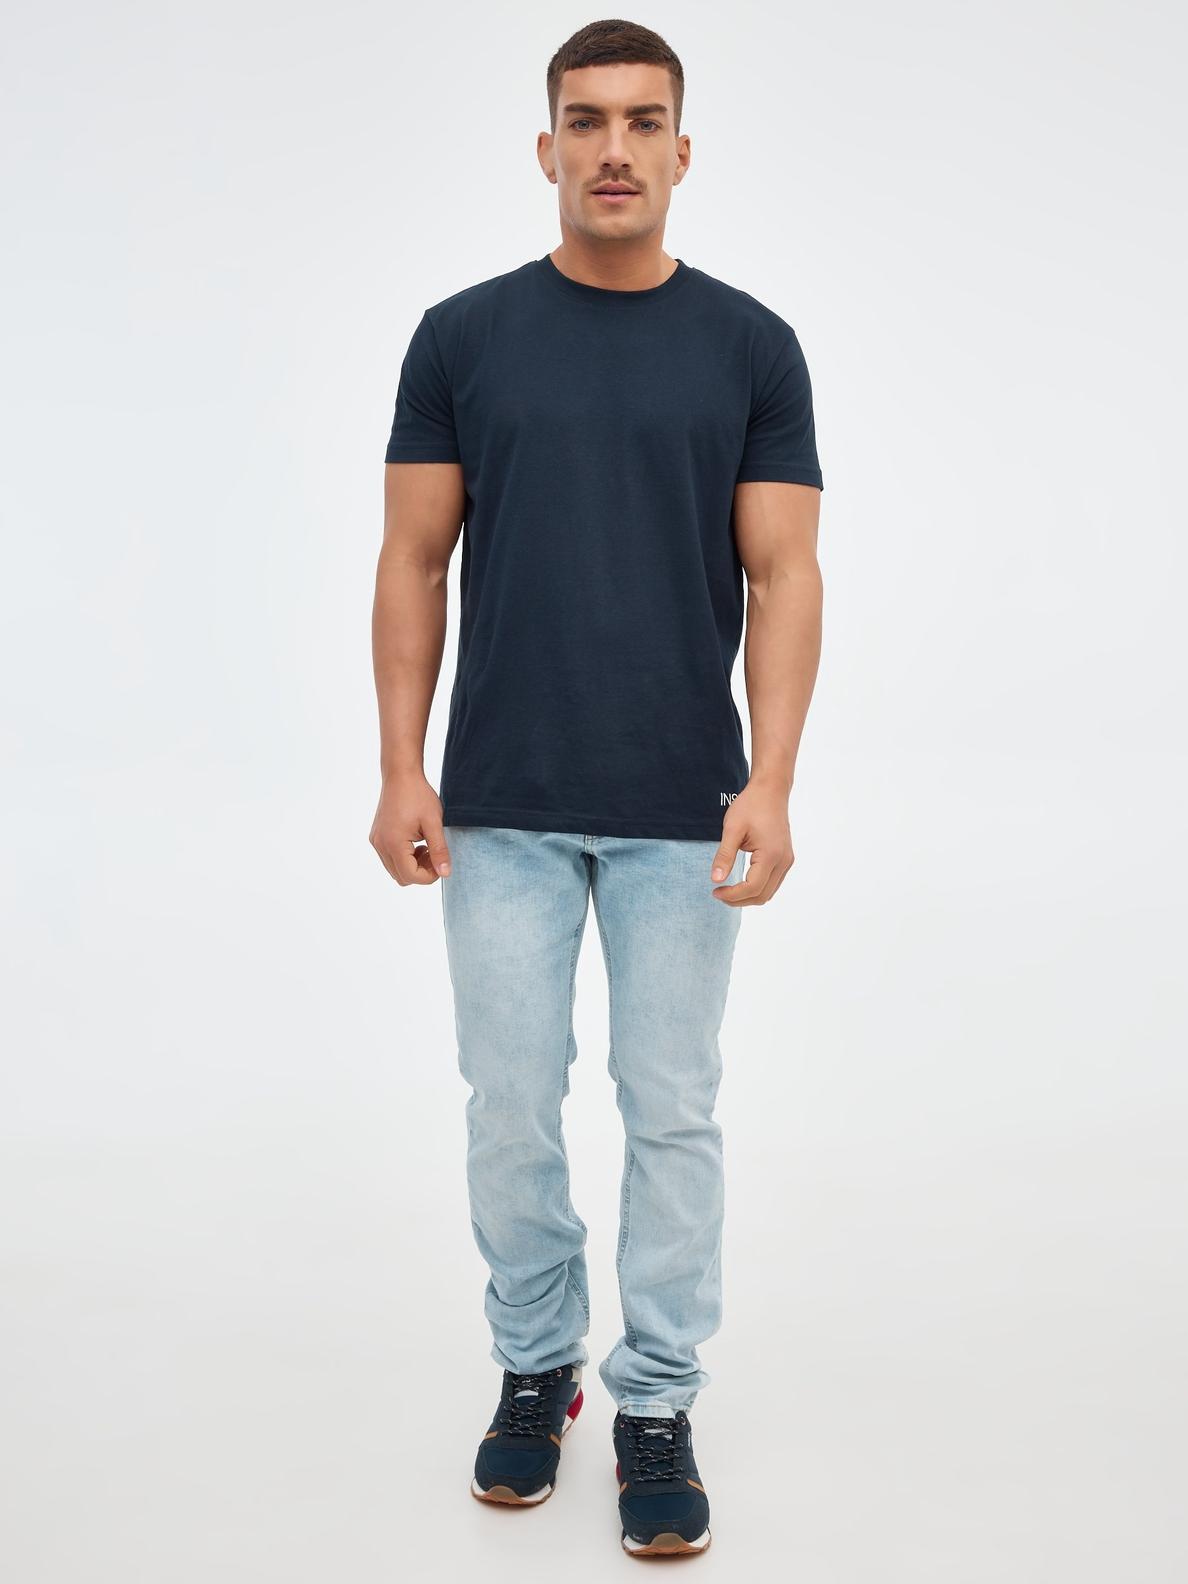 Oferta de Jeans slim azul desgastados por 14,99€ en Inside